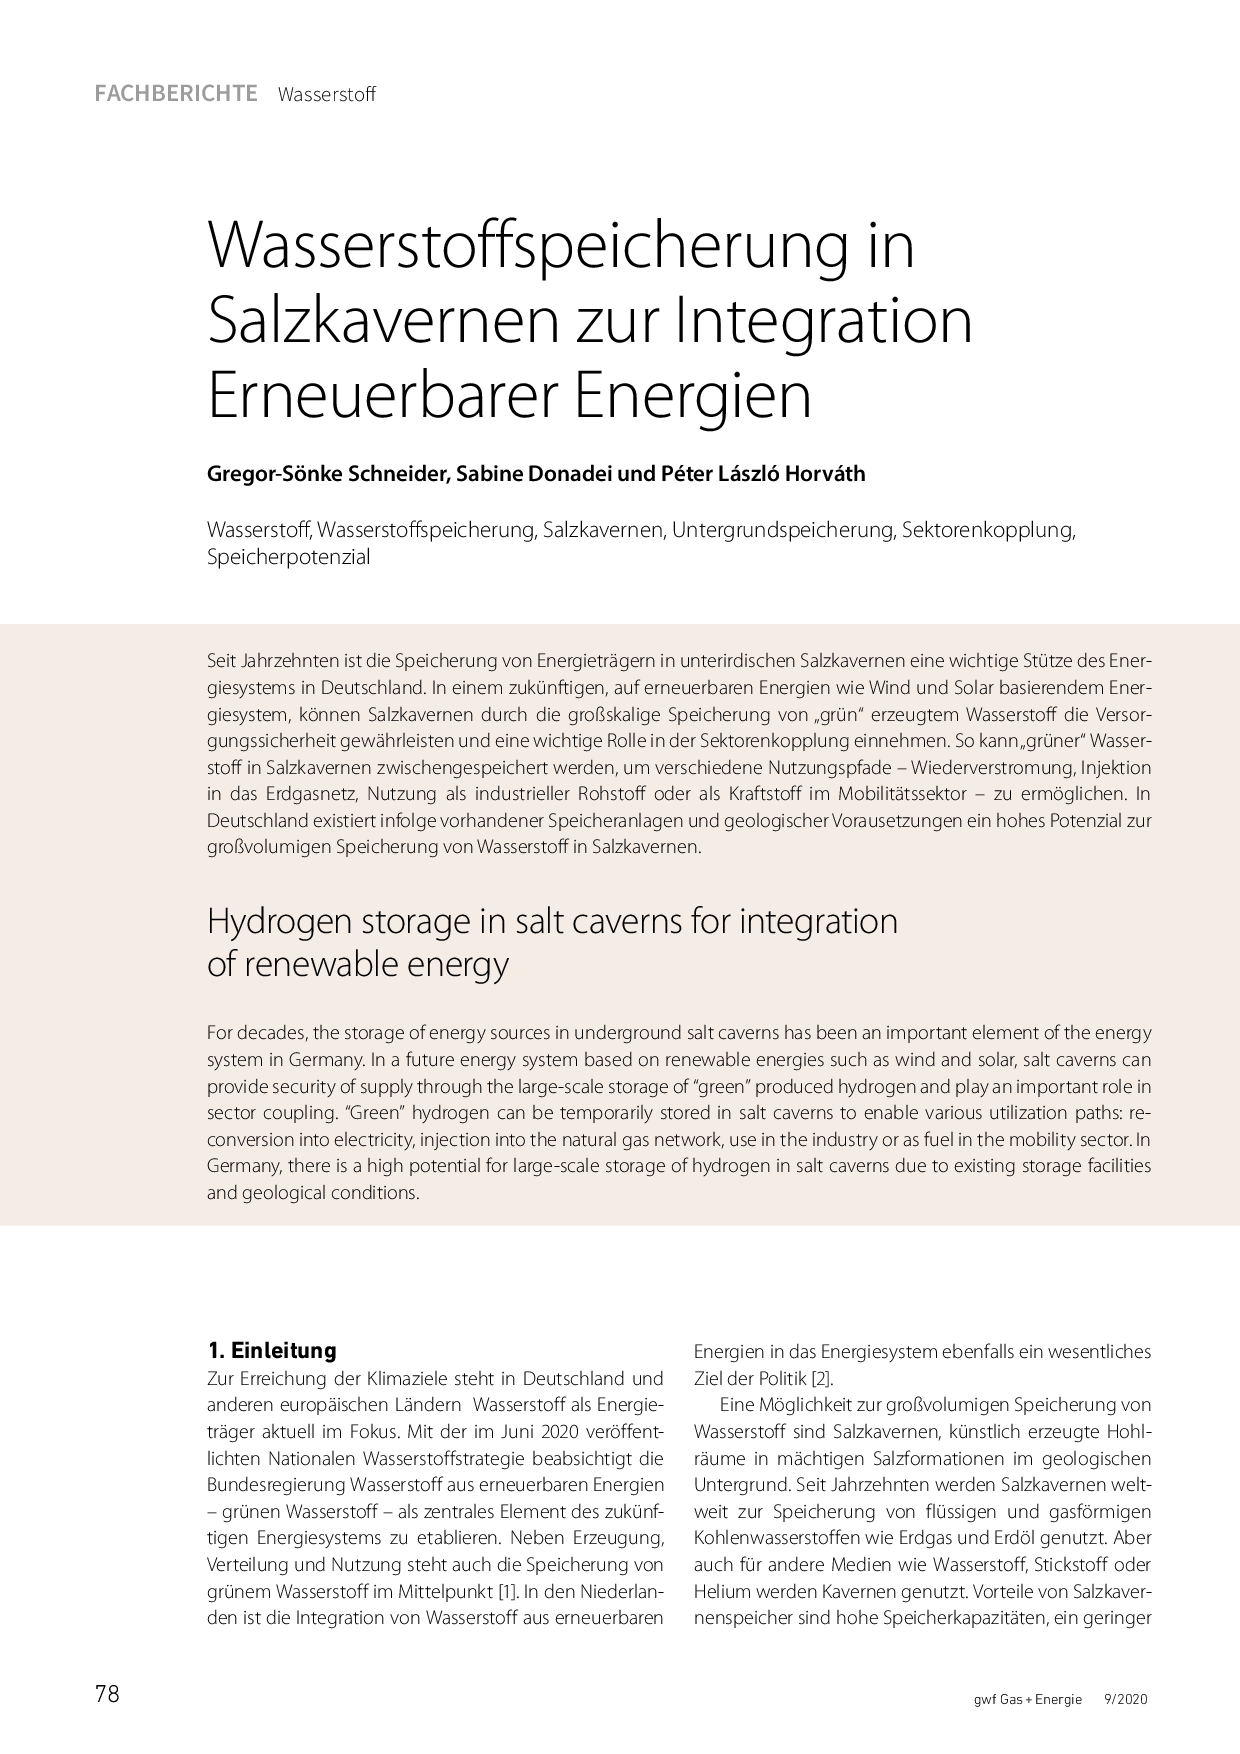 Wasserstoffspeicherung in Salzkavernen zur Integration Erneuerbarer Energien